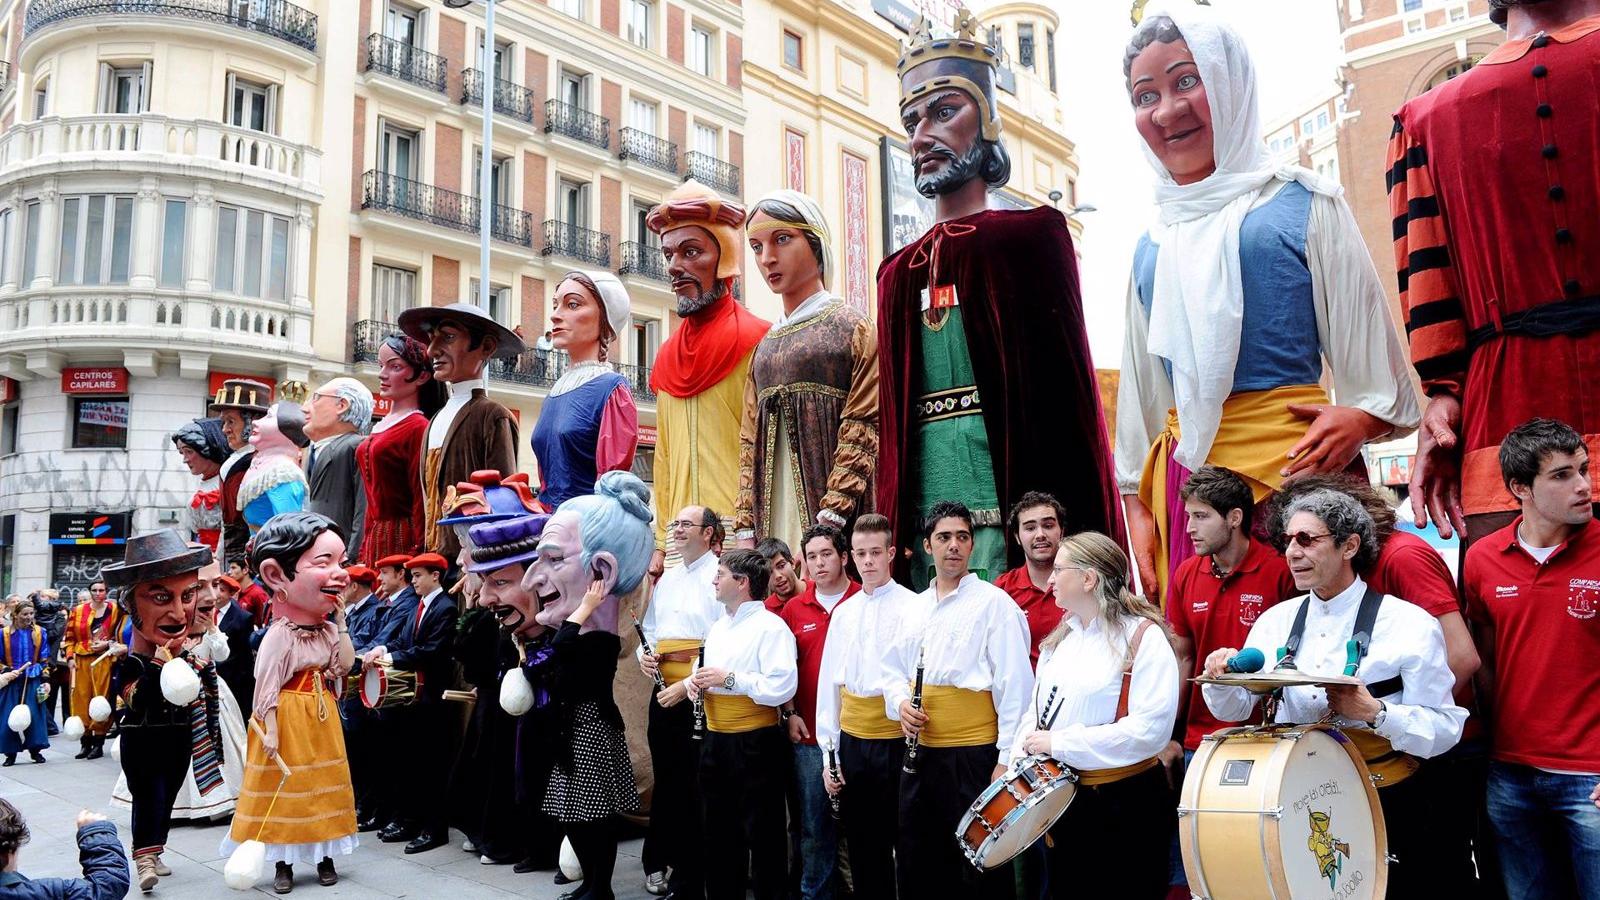 Los gigantes y cabezudos de Madrid descansan en el Museo de Artes y Tradiciones Populares desde hace cinco meses